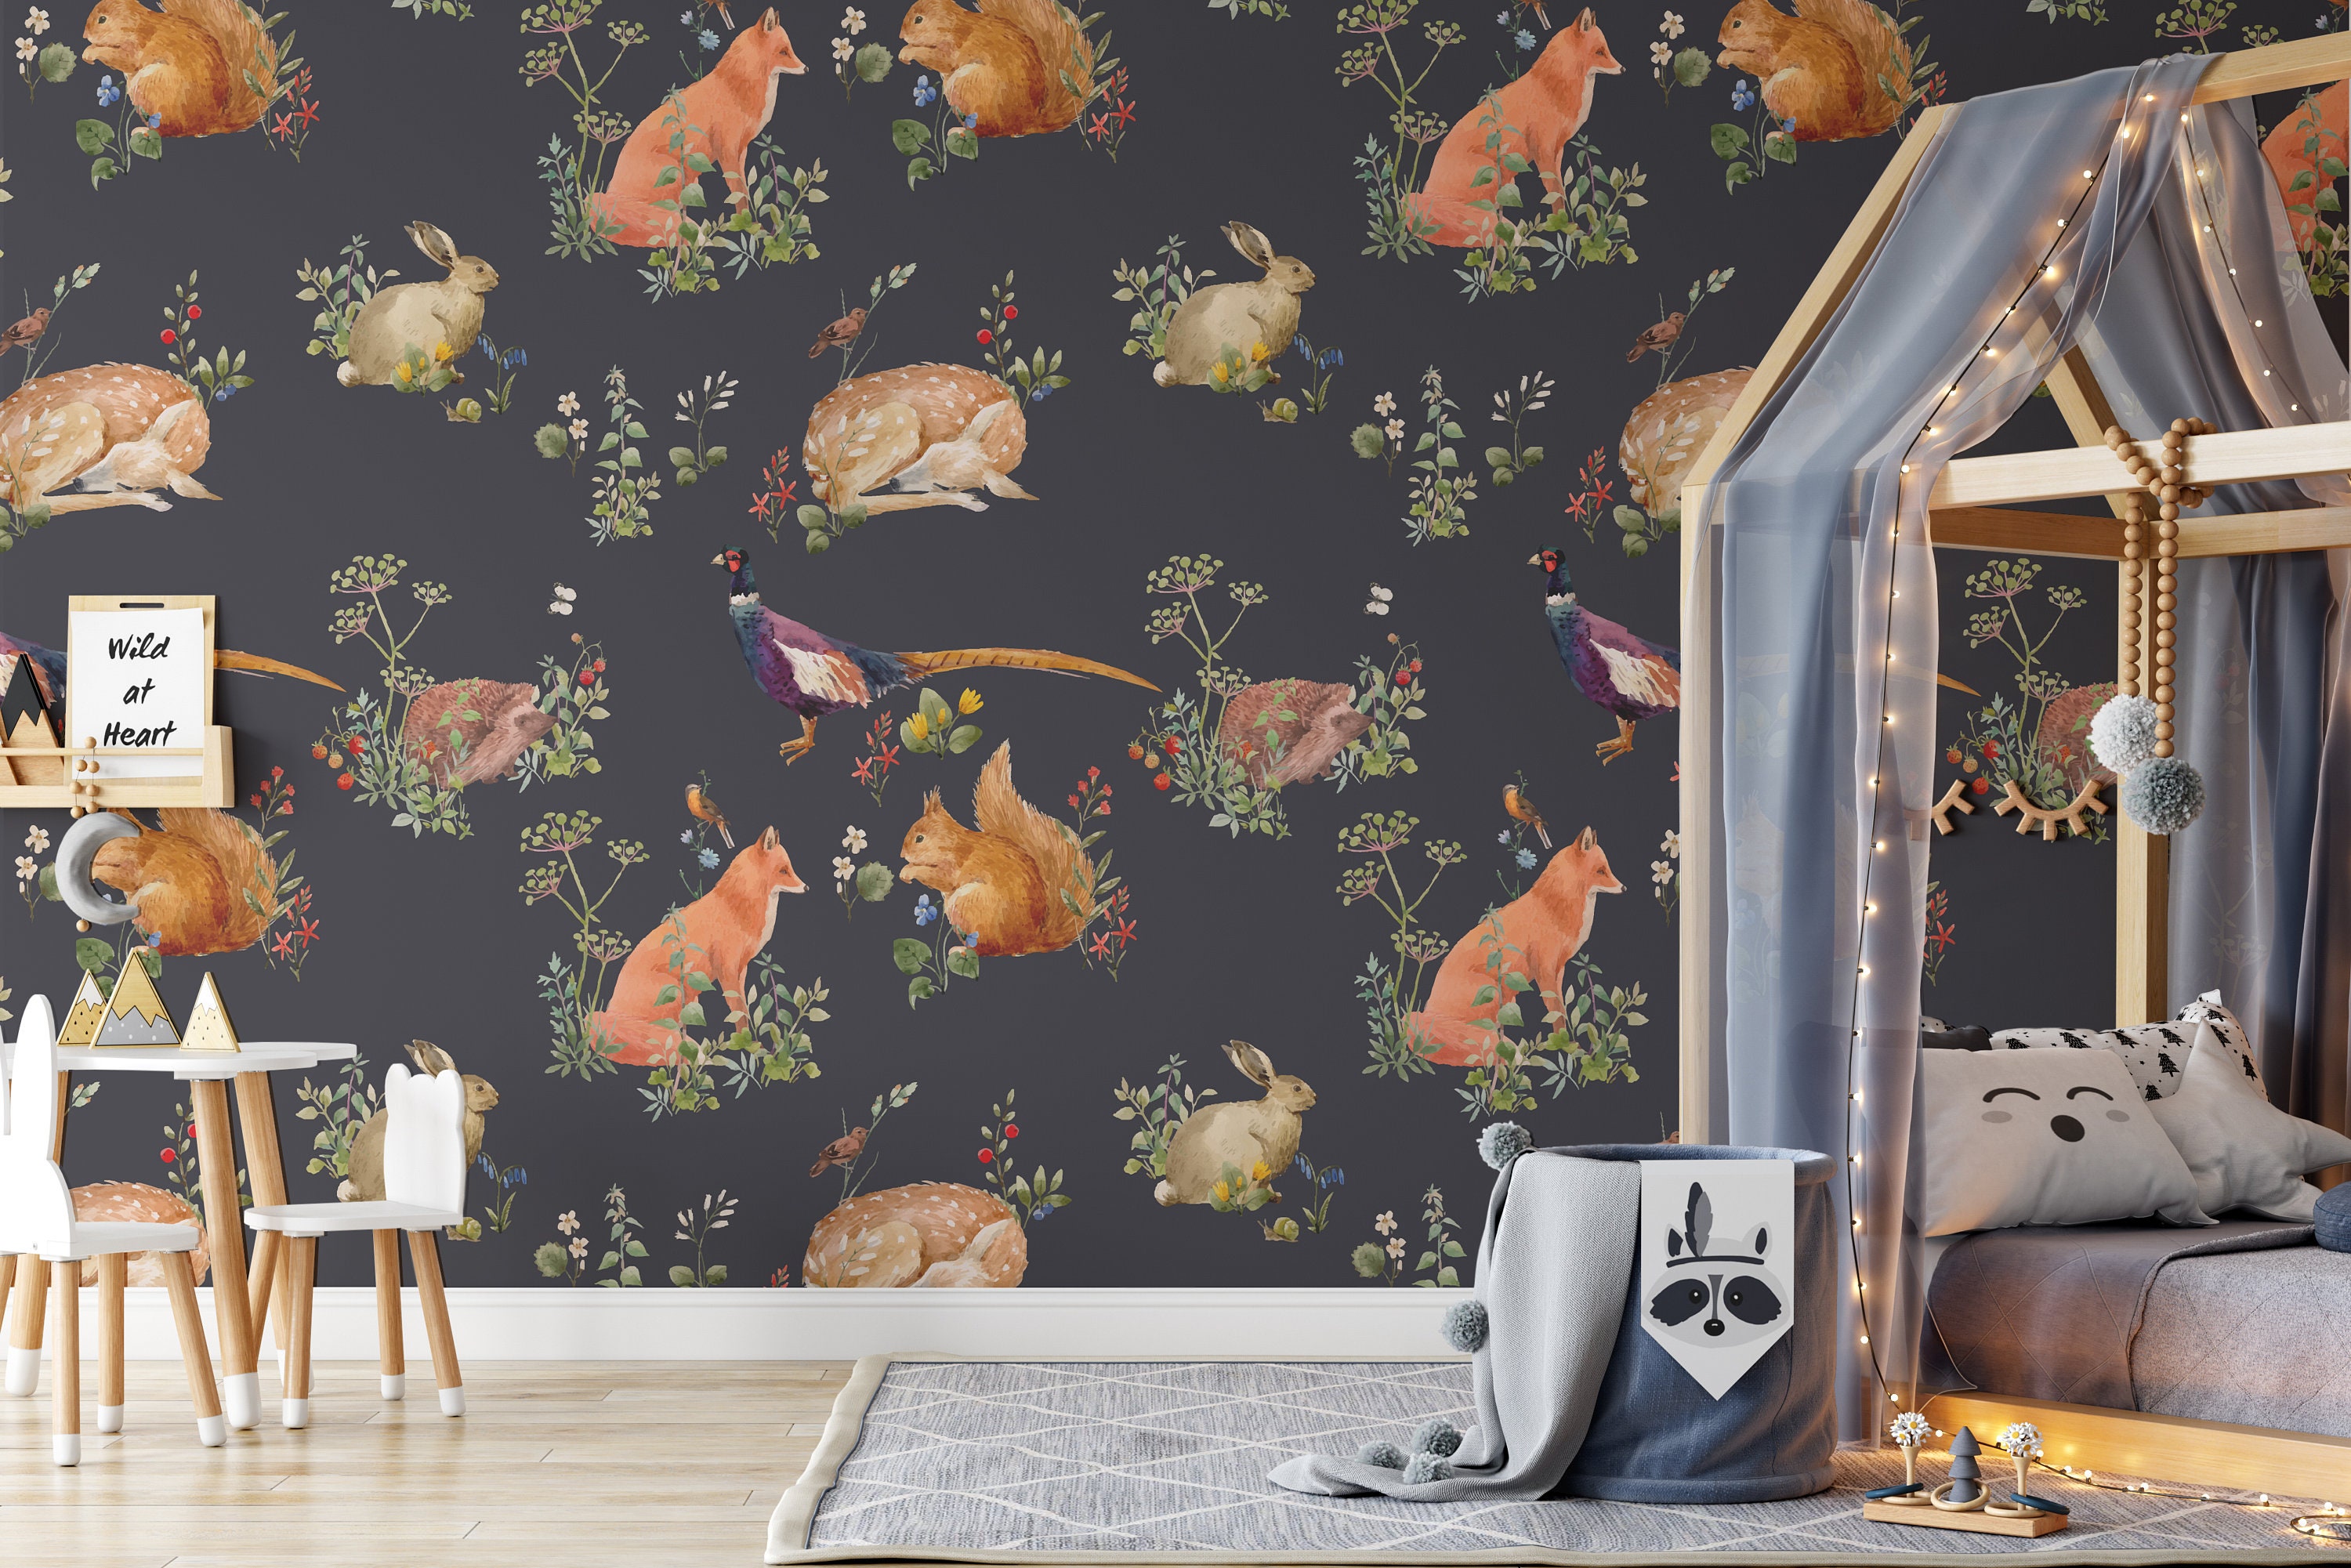 Magnetic wallpaper  Rabbit wallpaper, Animal print wallpaper, Wall murals  diy